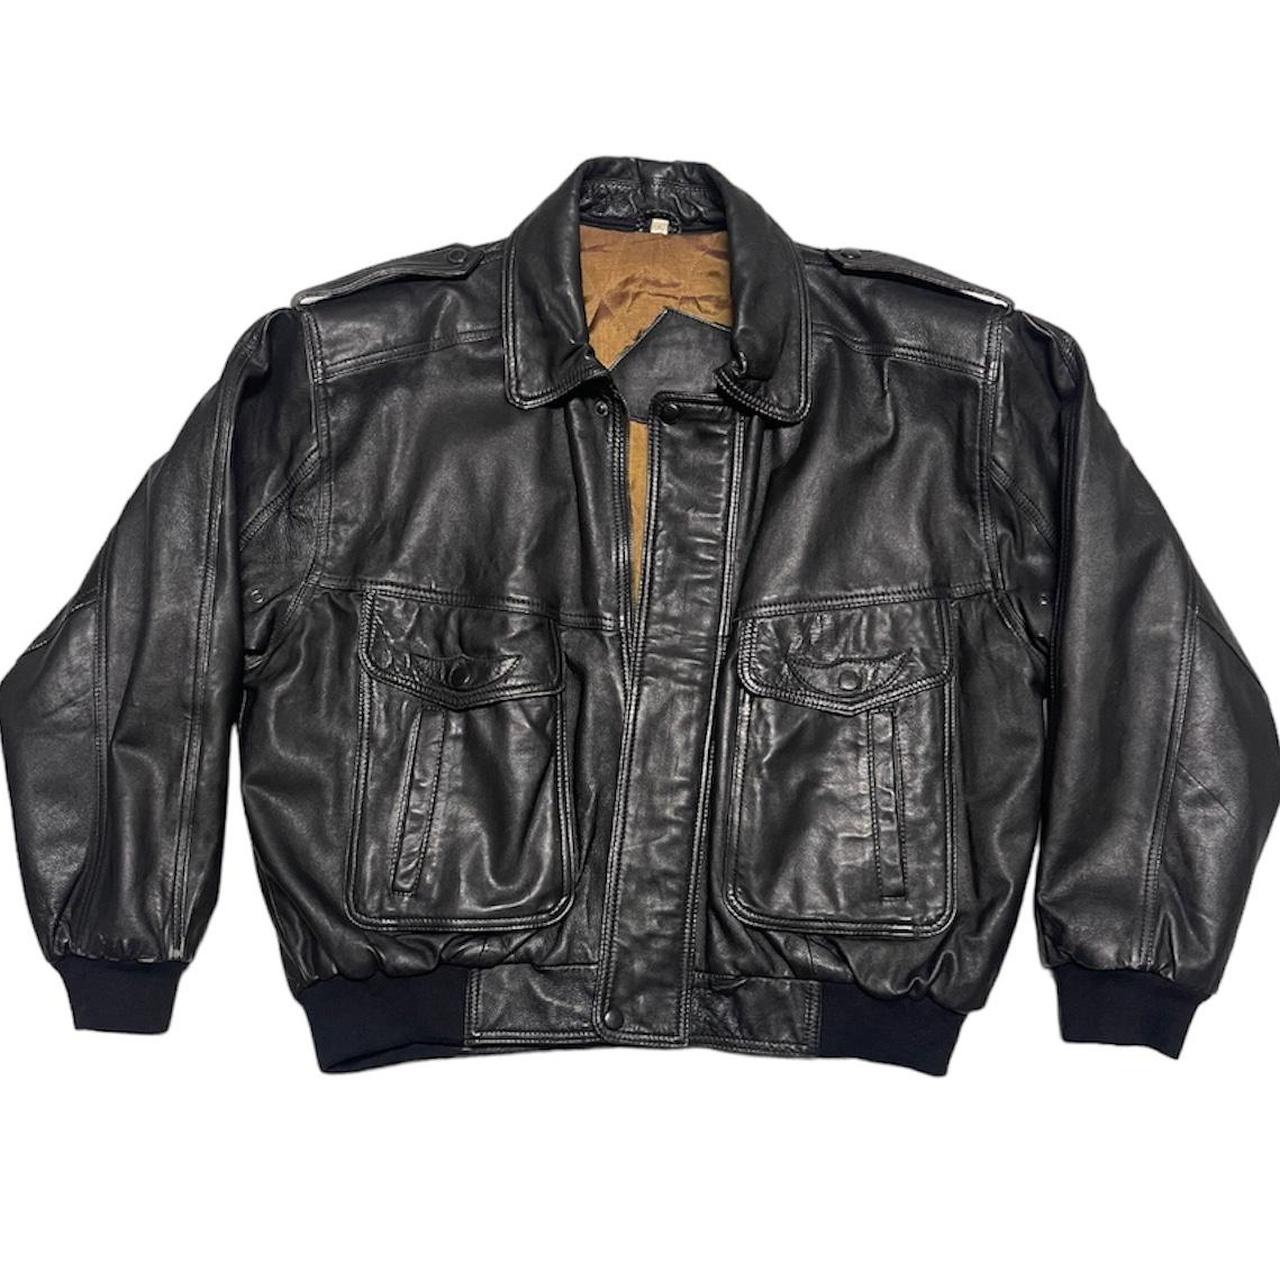 Vintage Leather Bomber Jacket Bought in Depop for... - Depop